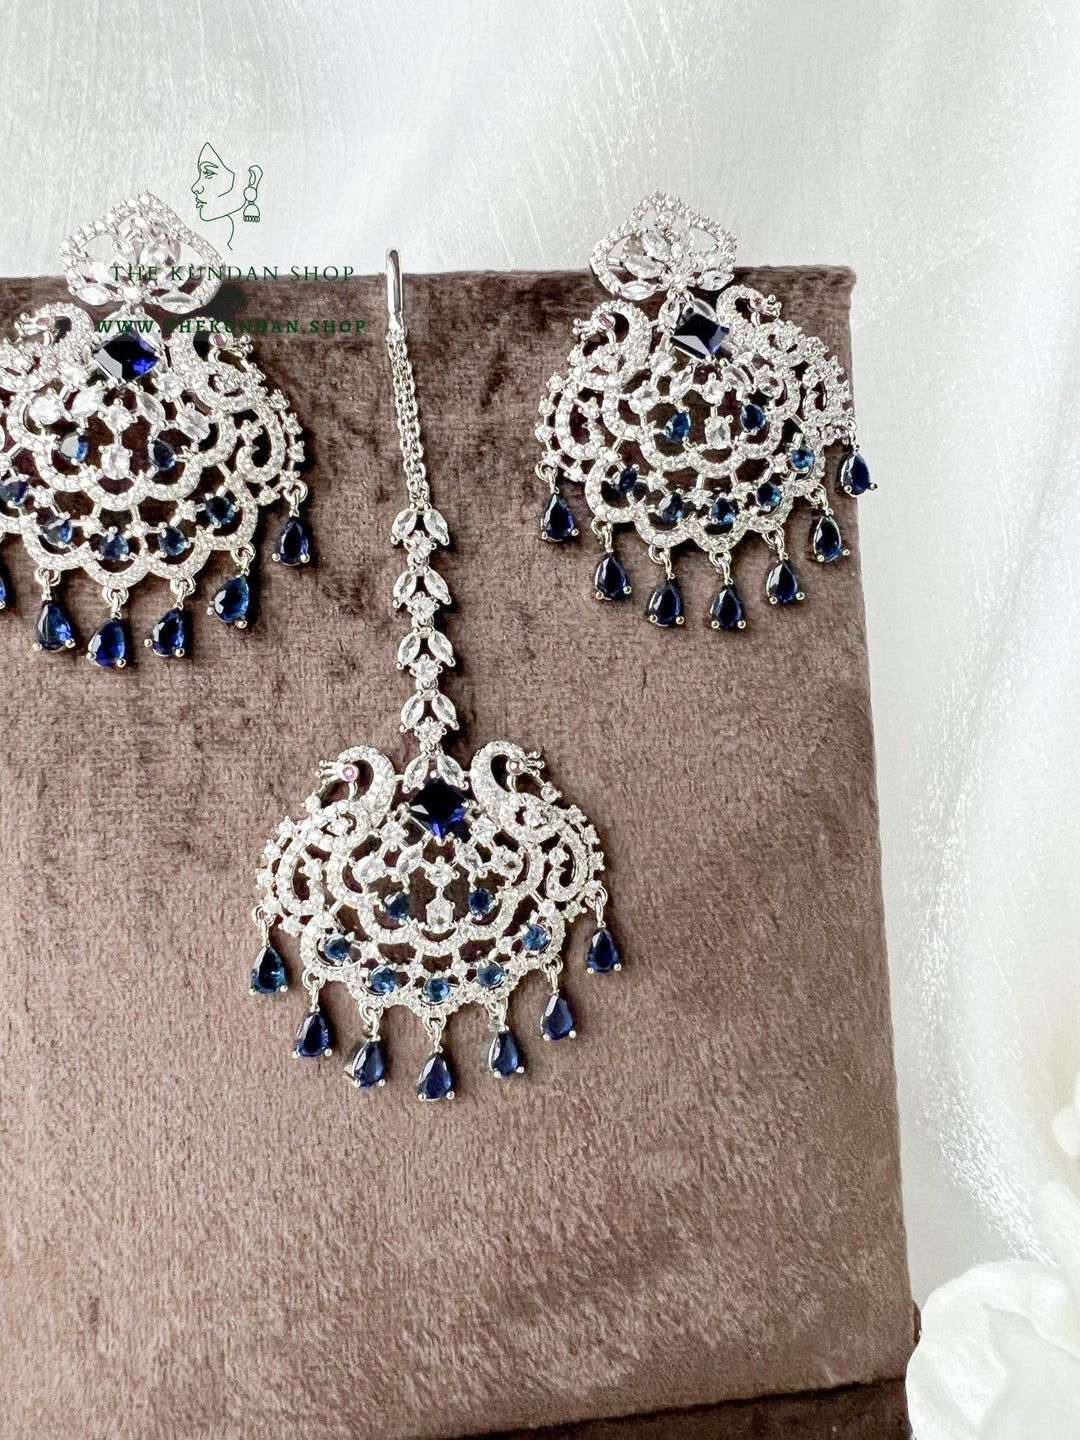 Serenity in Silver & Sapphire Earrings + Tikka THE KUNDAN SHOP 